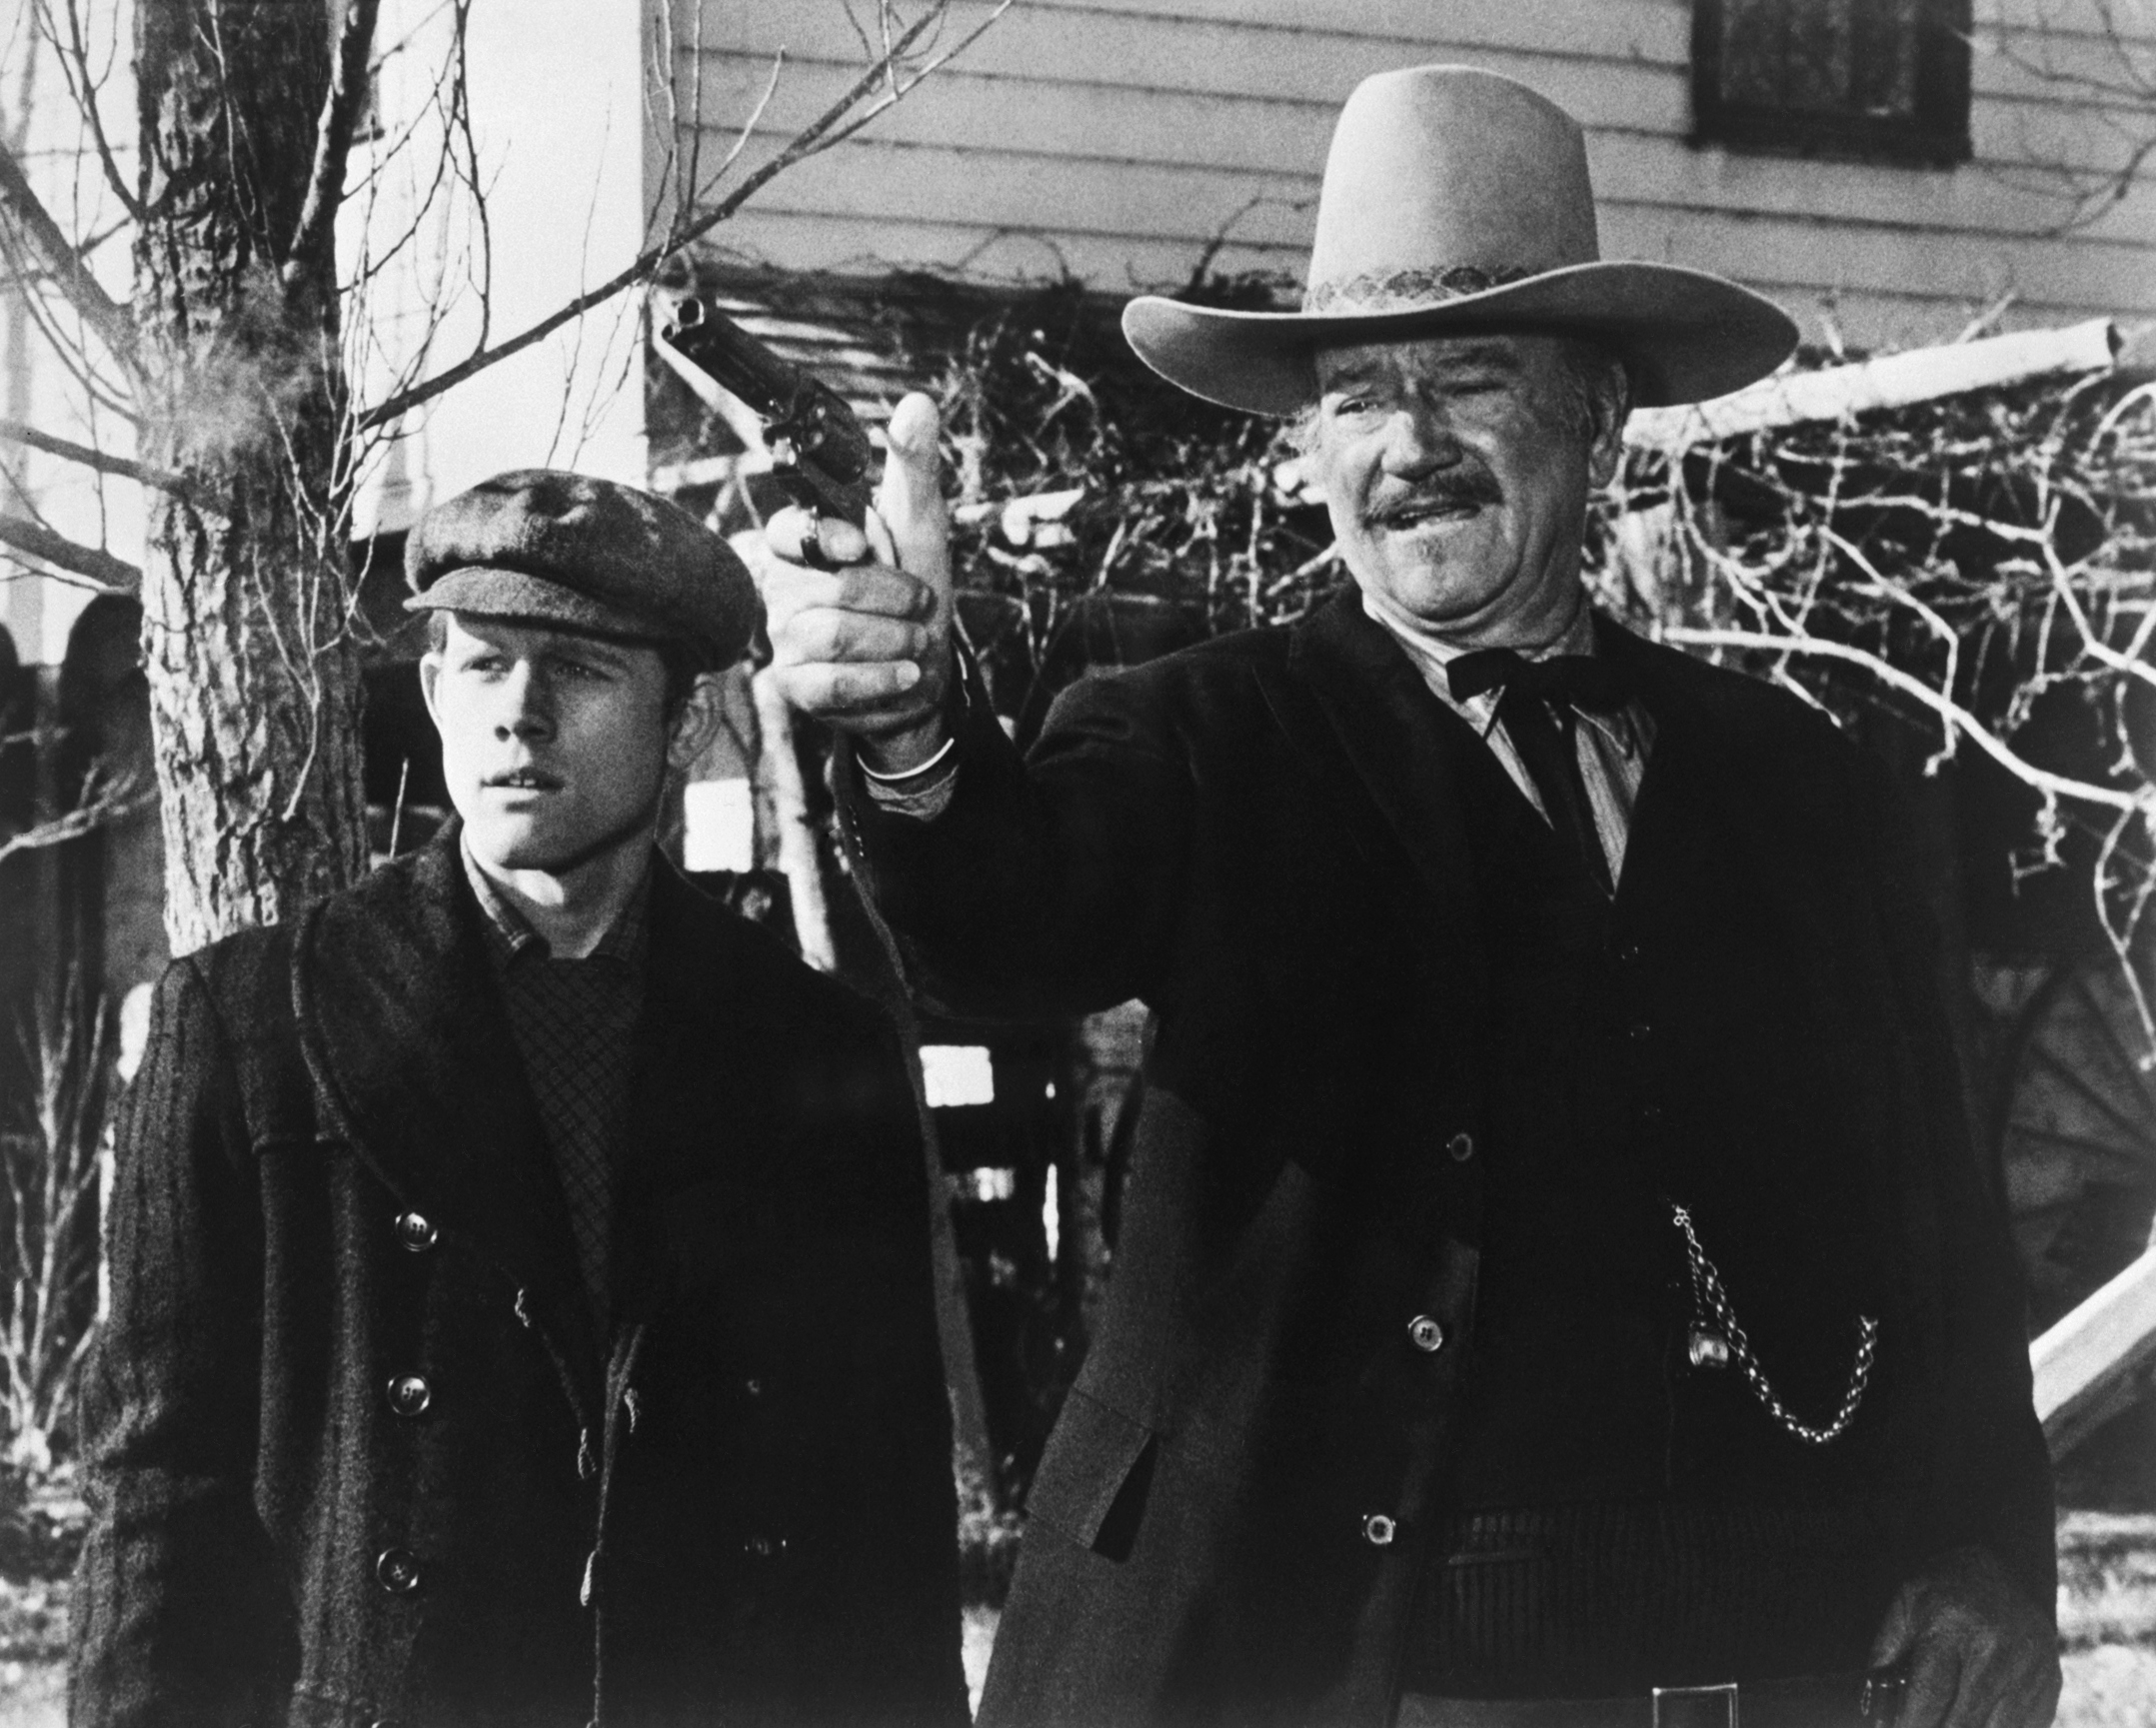 Ron Howard and John Wayne near a tree